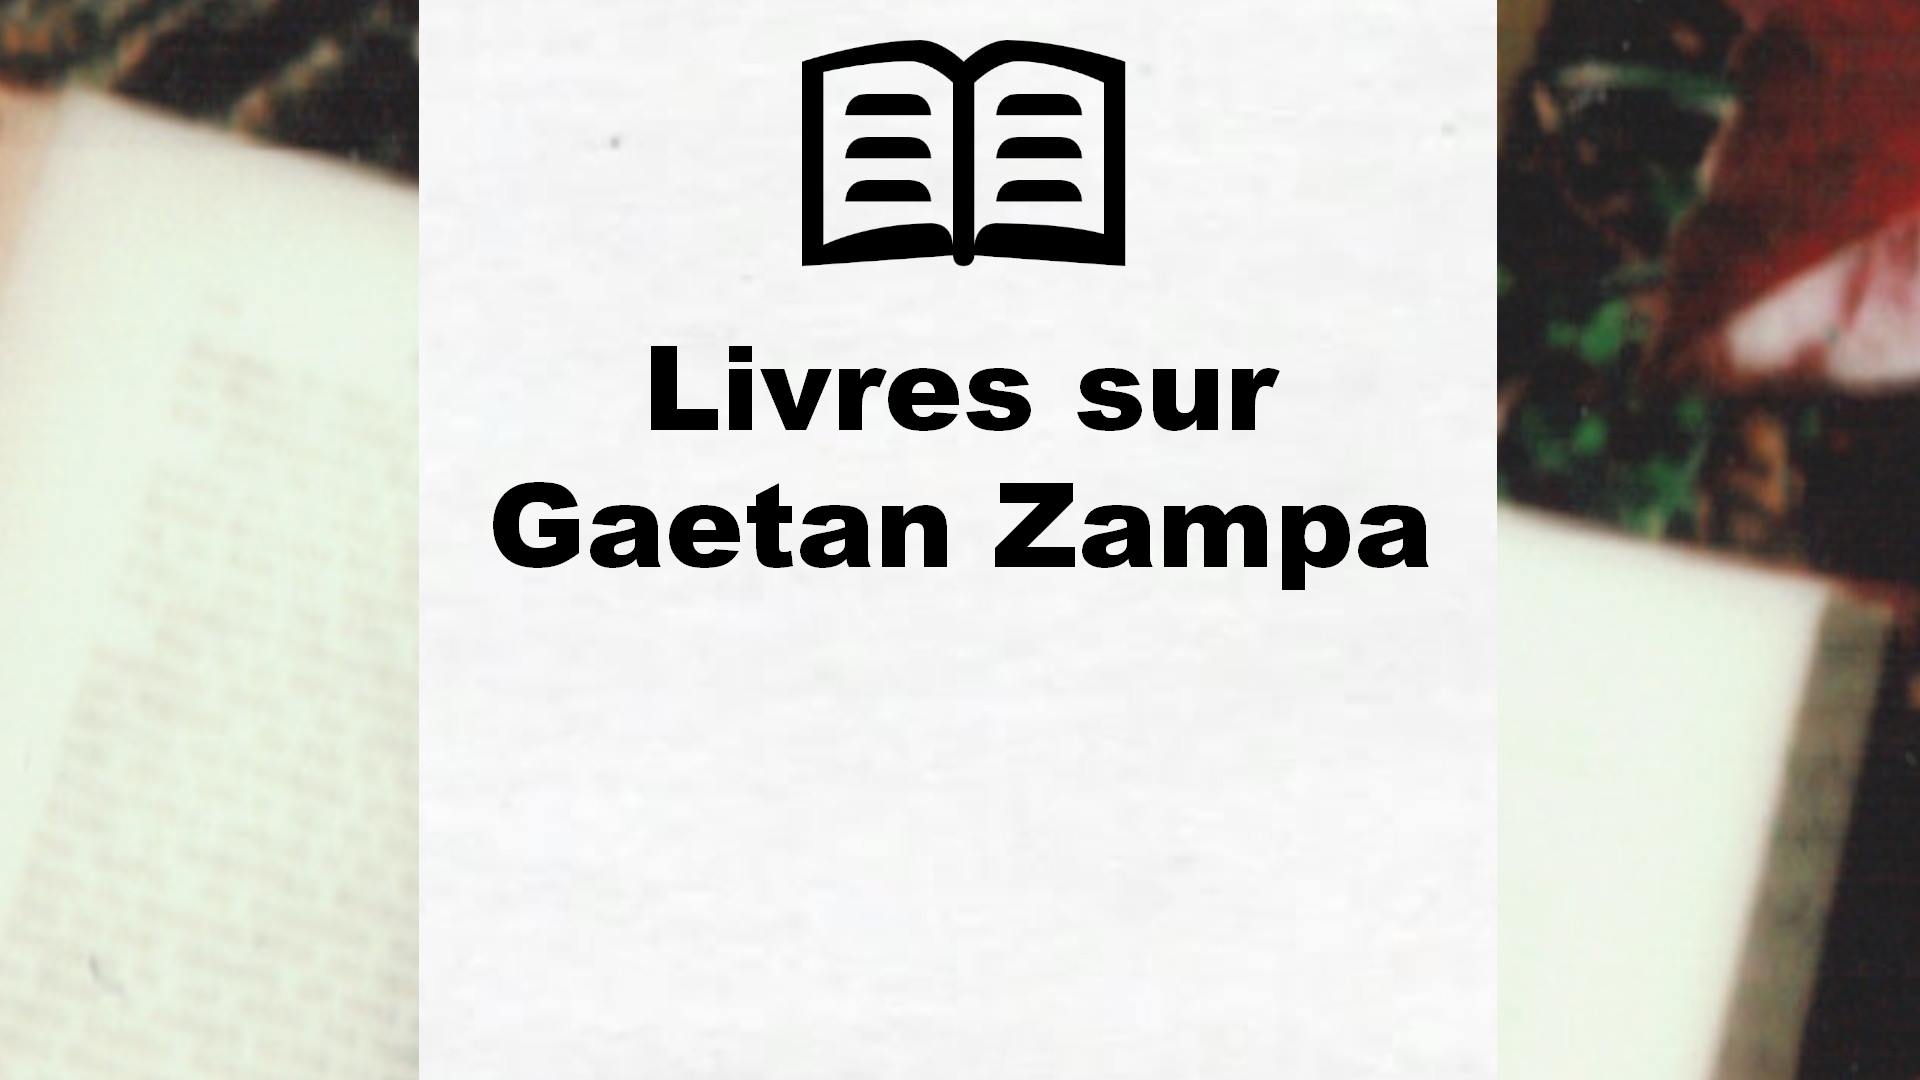 Livres sur Gaetan Zampa